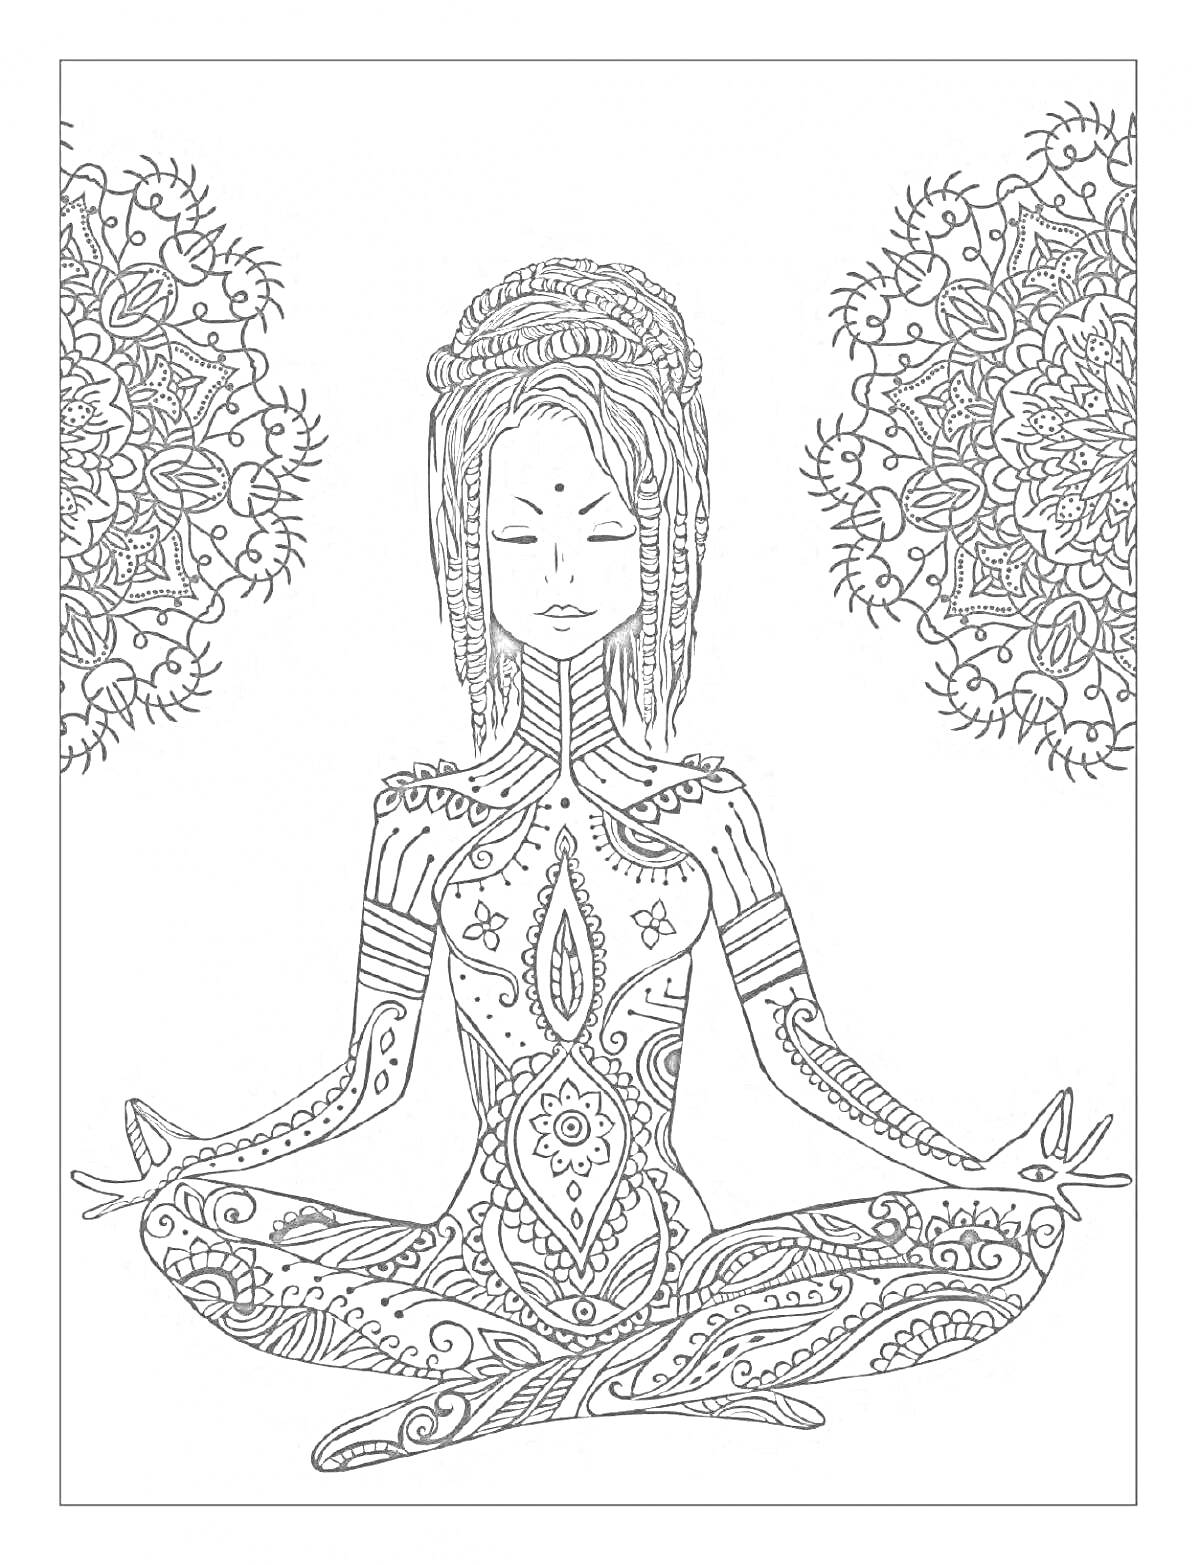 Раскраска Медитирующая женщина с мандалами и орнаментами